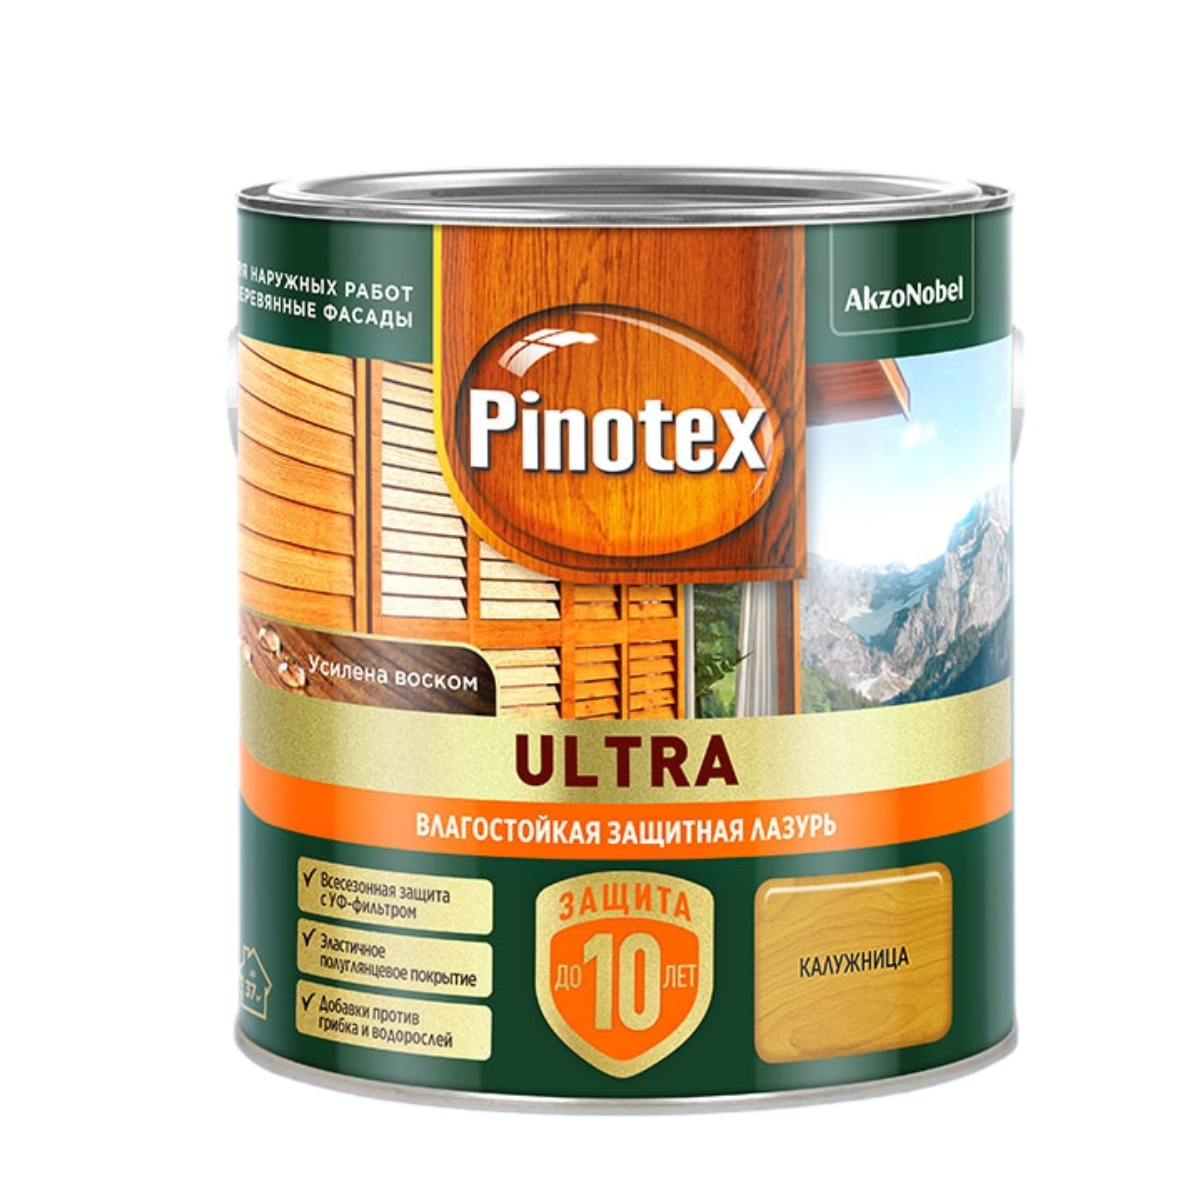 Лазурь для дерева Pinotex Ultra влагостойкая, калужница, 2,5 л